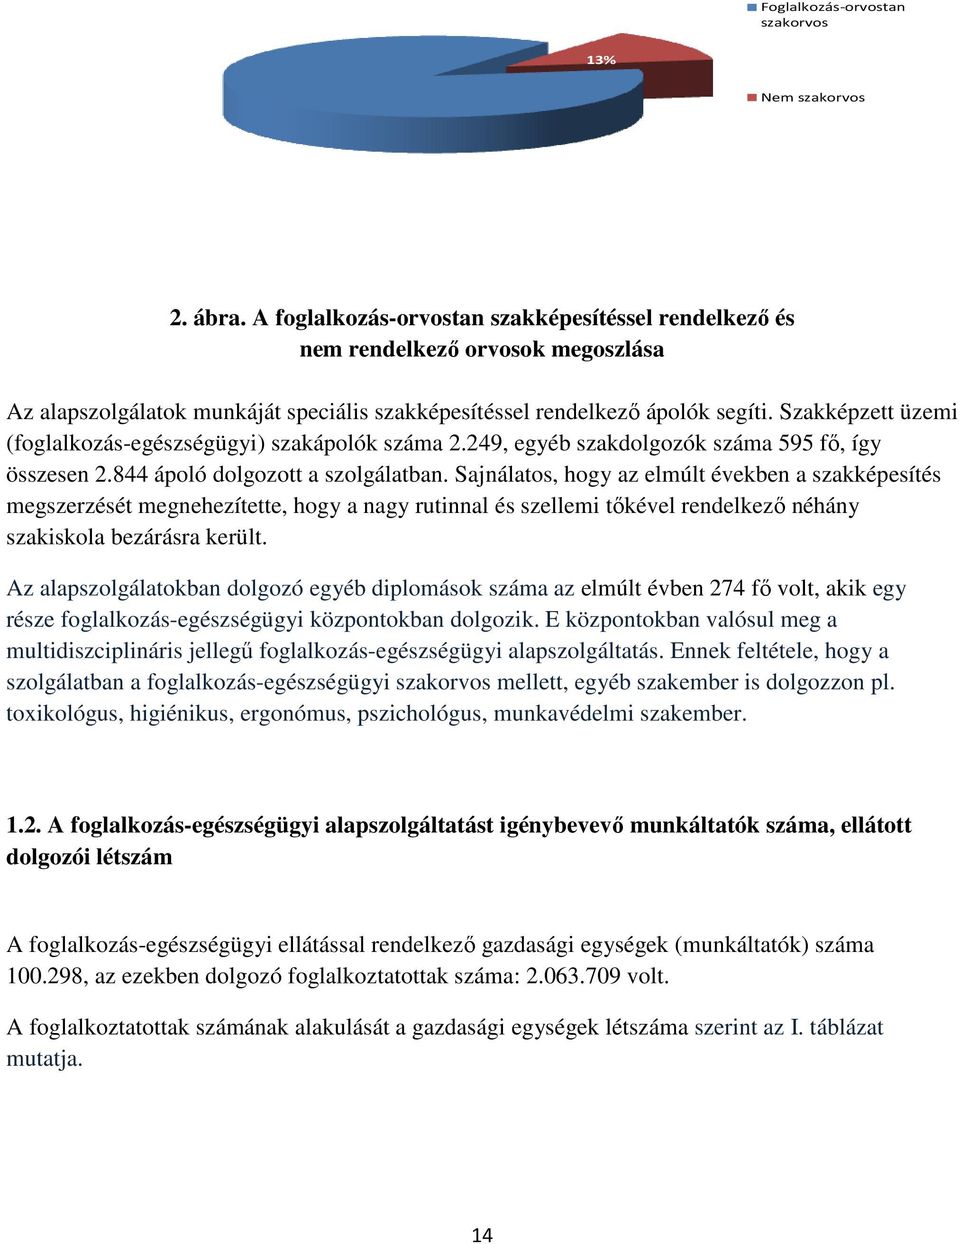 Szakképzett üzemi (foglalkozás-egészségügyi) szakápolók száma 2.249, egyéb szakdolgozók száma 595 fı, így összesen 2.844 ápoló dolgozott a szolgálatban.